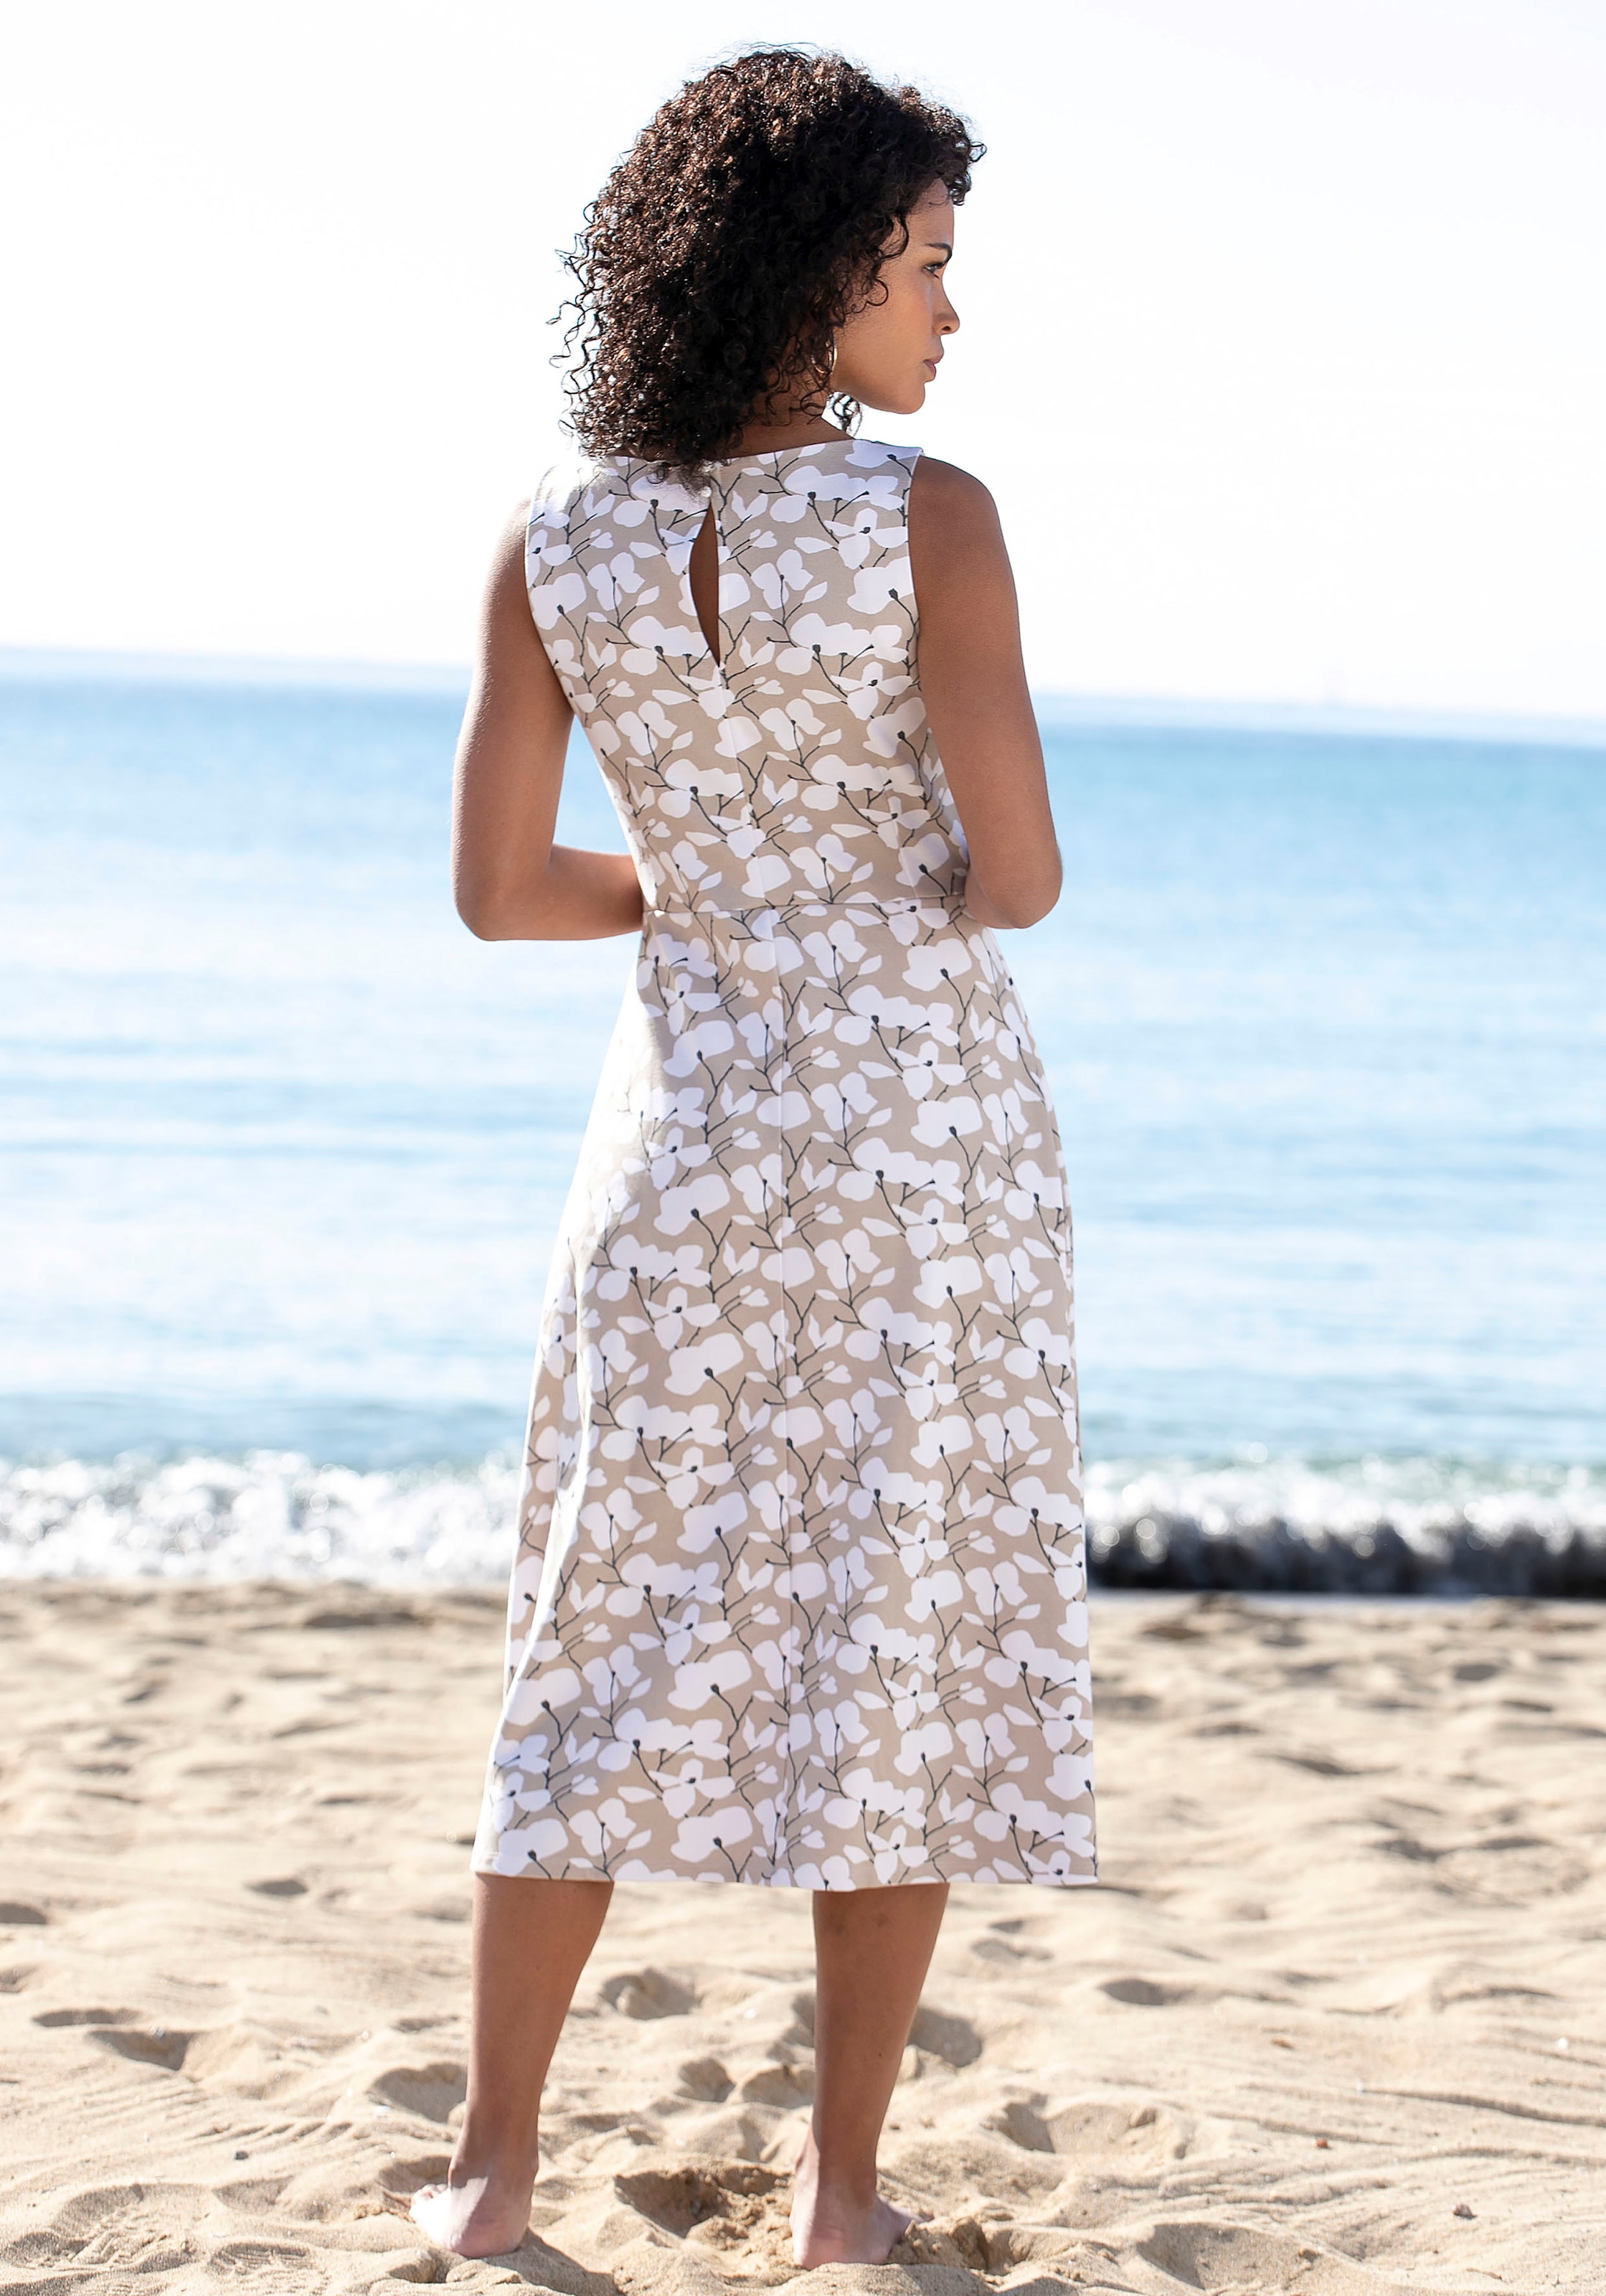 Blumendruck, mit Sommerkleid, shoppen Beachtime Strandbekleidung Strandmode,